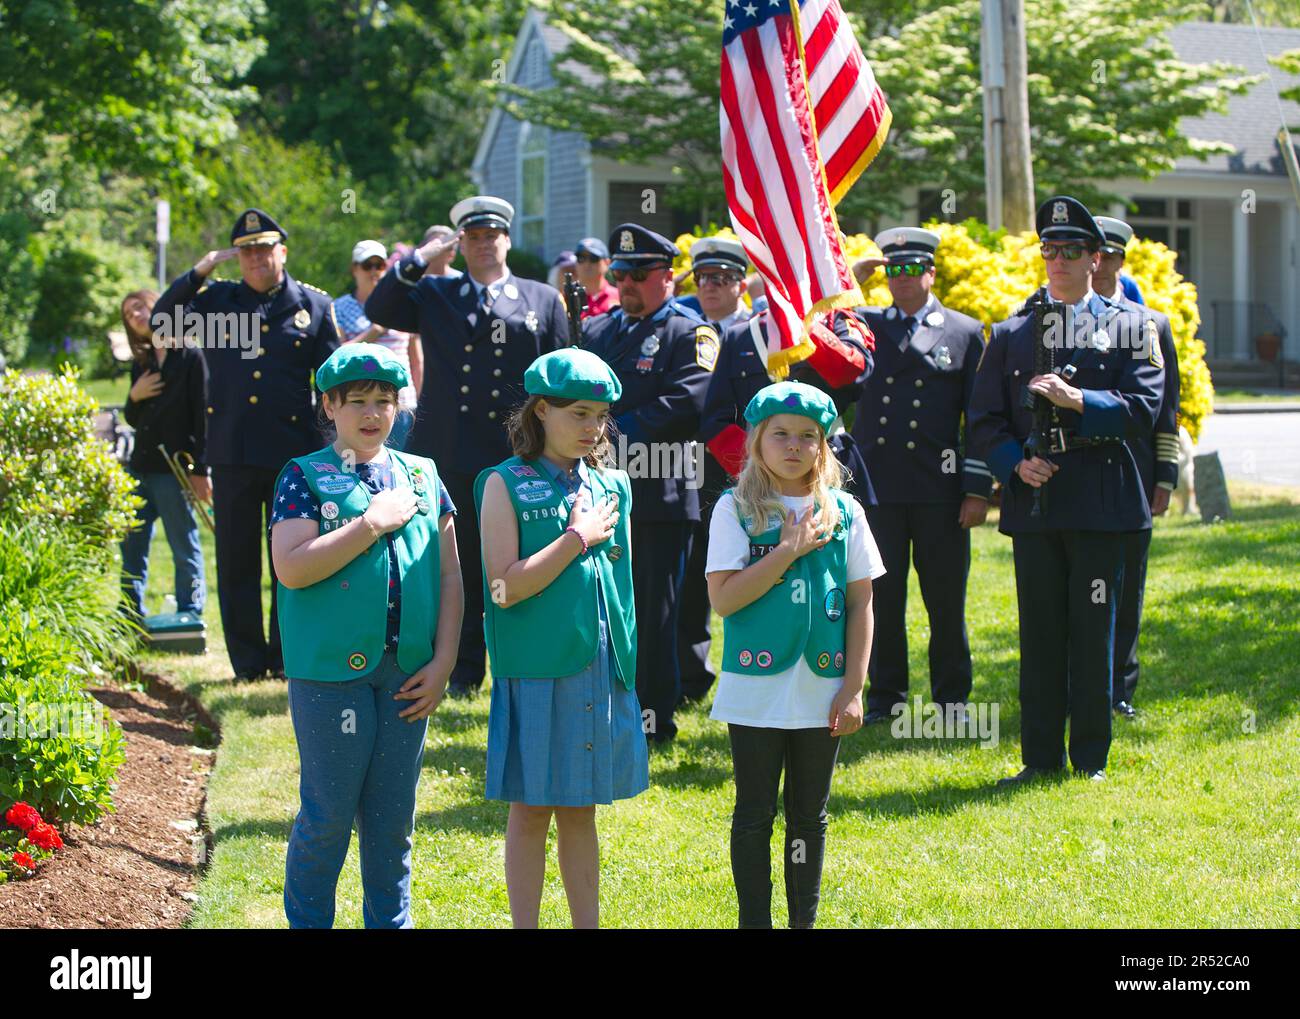 Evento del Día de los Caídos. Dennis, Massachusetts, (Cape Cod), Estados Unidos. Niñas Scouts y Cuerpo de Bomberos Guardia de Color durante el Himno Nacional Foto de stock